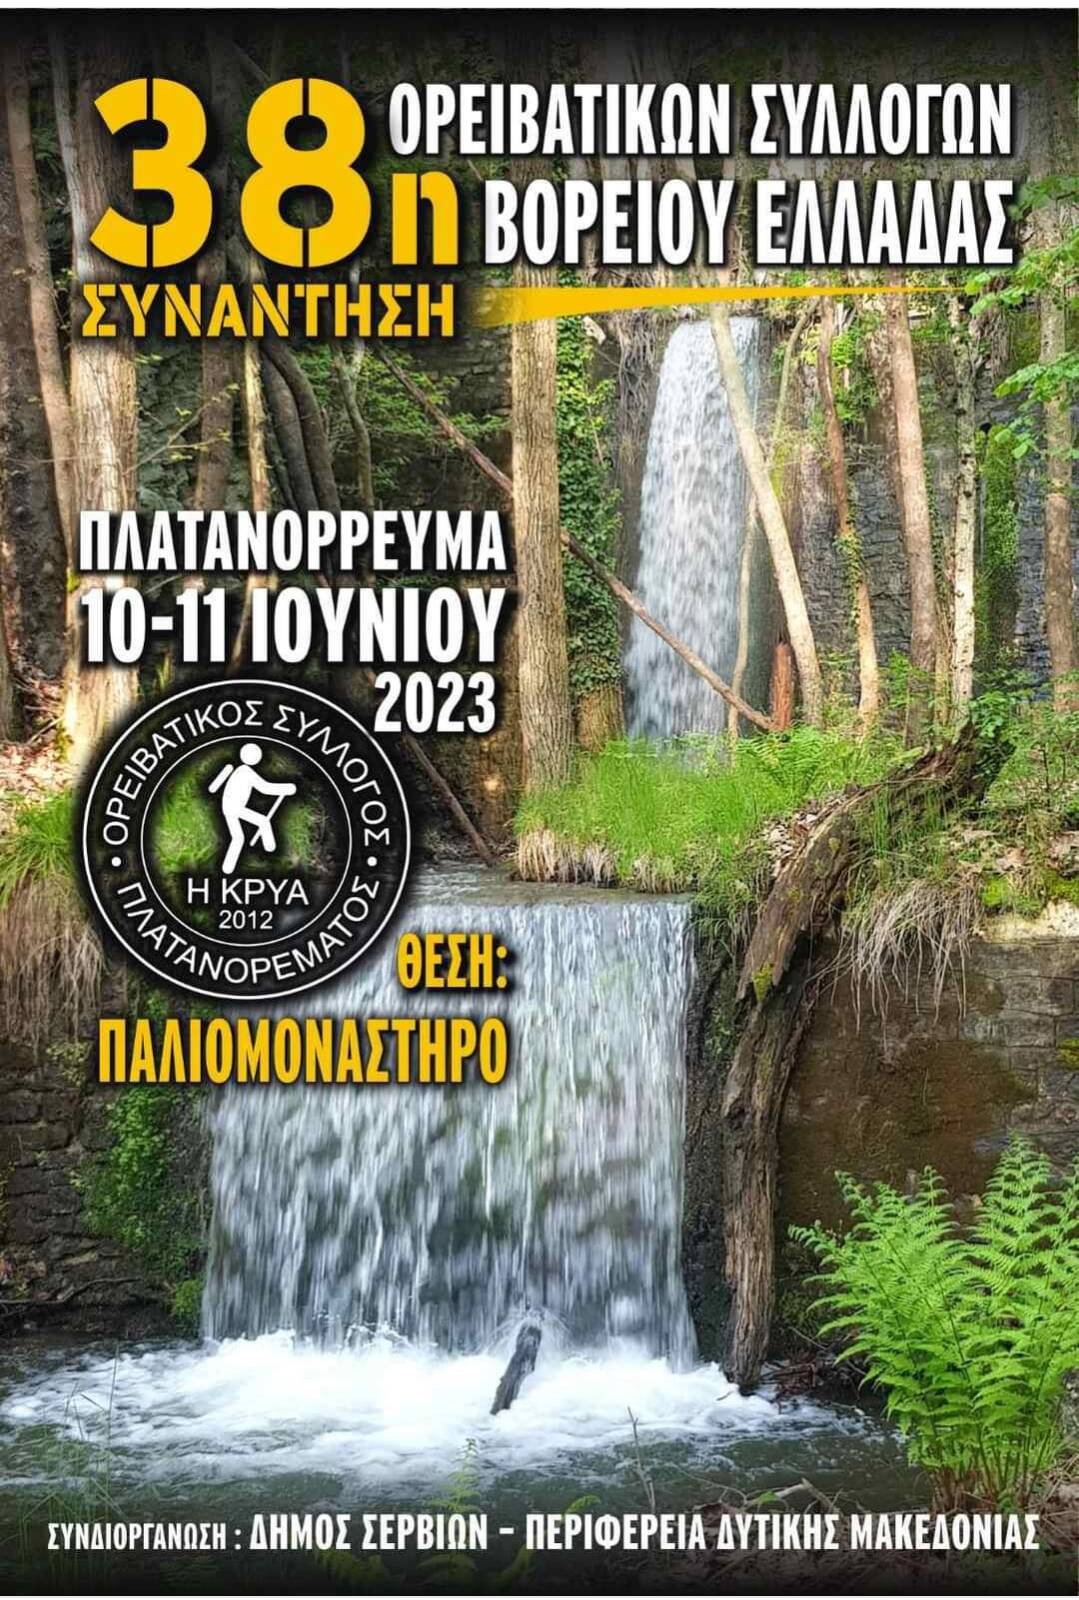 Συνάντηση Ορειβατικών Συλλόγων Βόρειας Ελλάδας Πλατανόρρευμα 10 και 11 Ιουνίου 2023